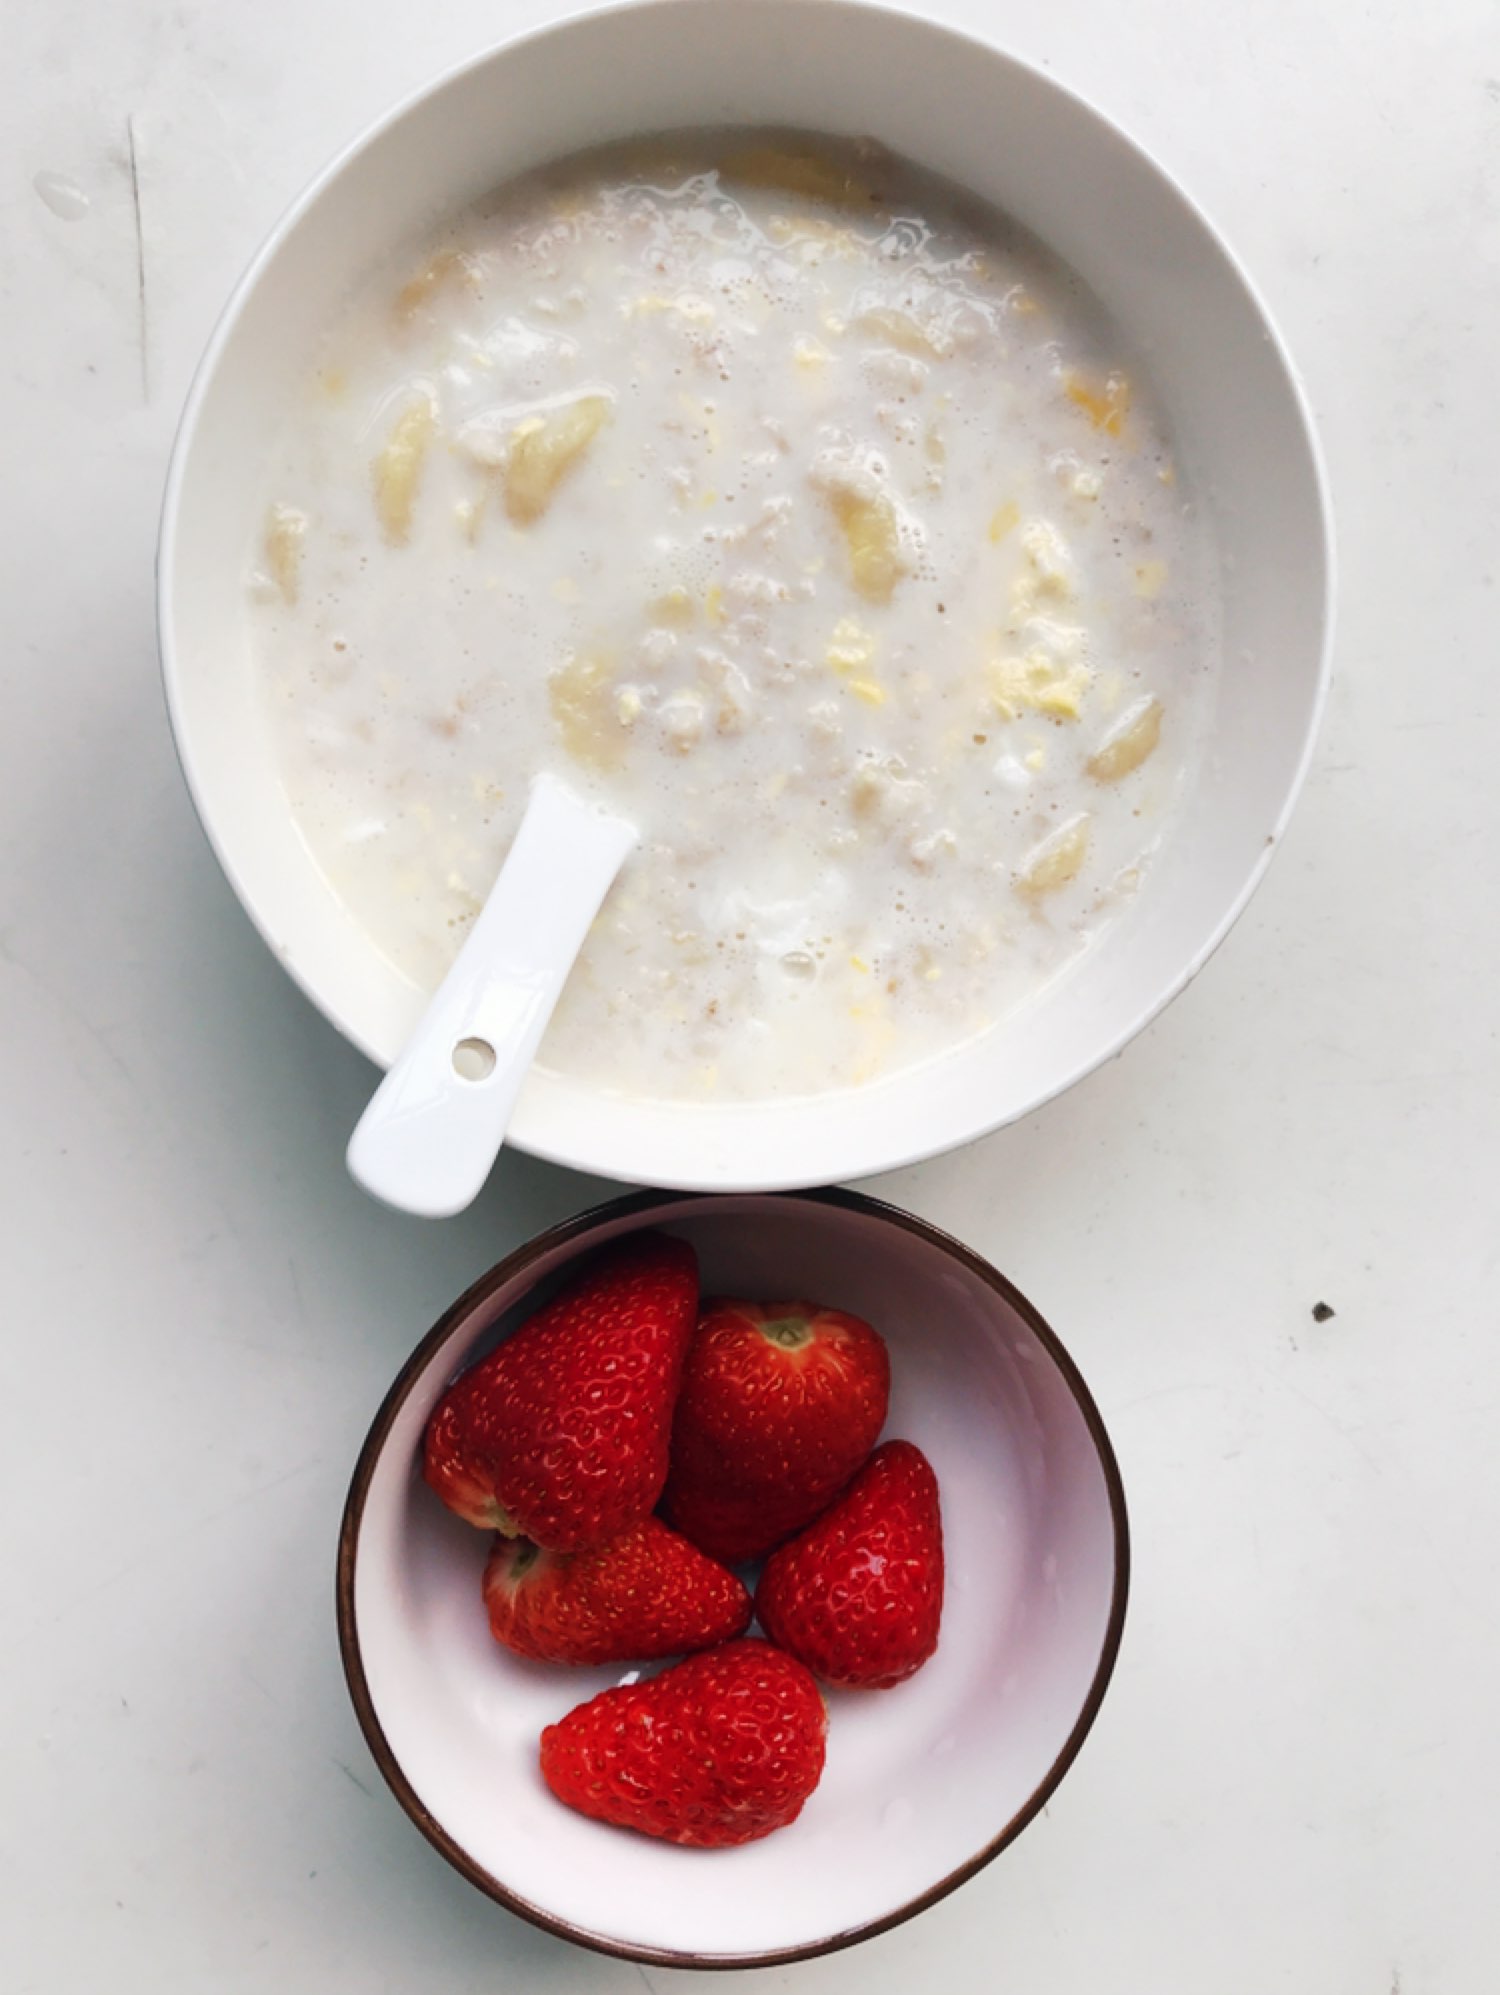 今日早餐香蕉牛奶鸡蛋燕麦粥草莓